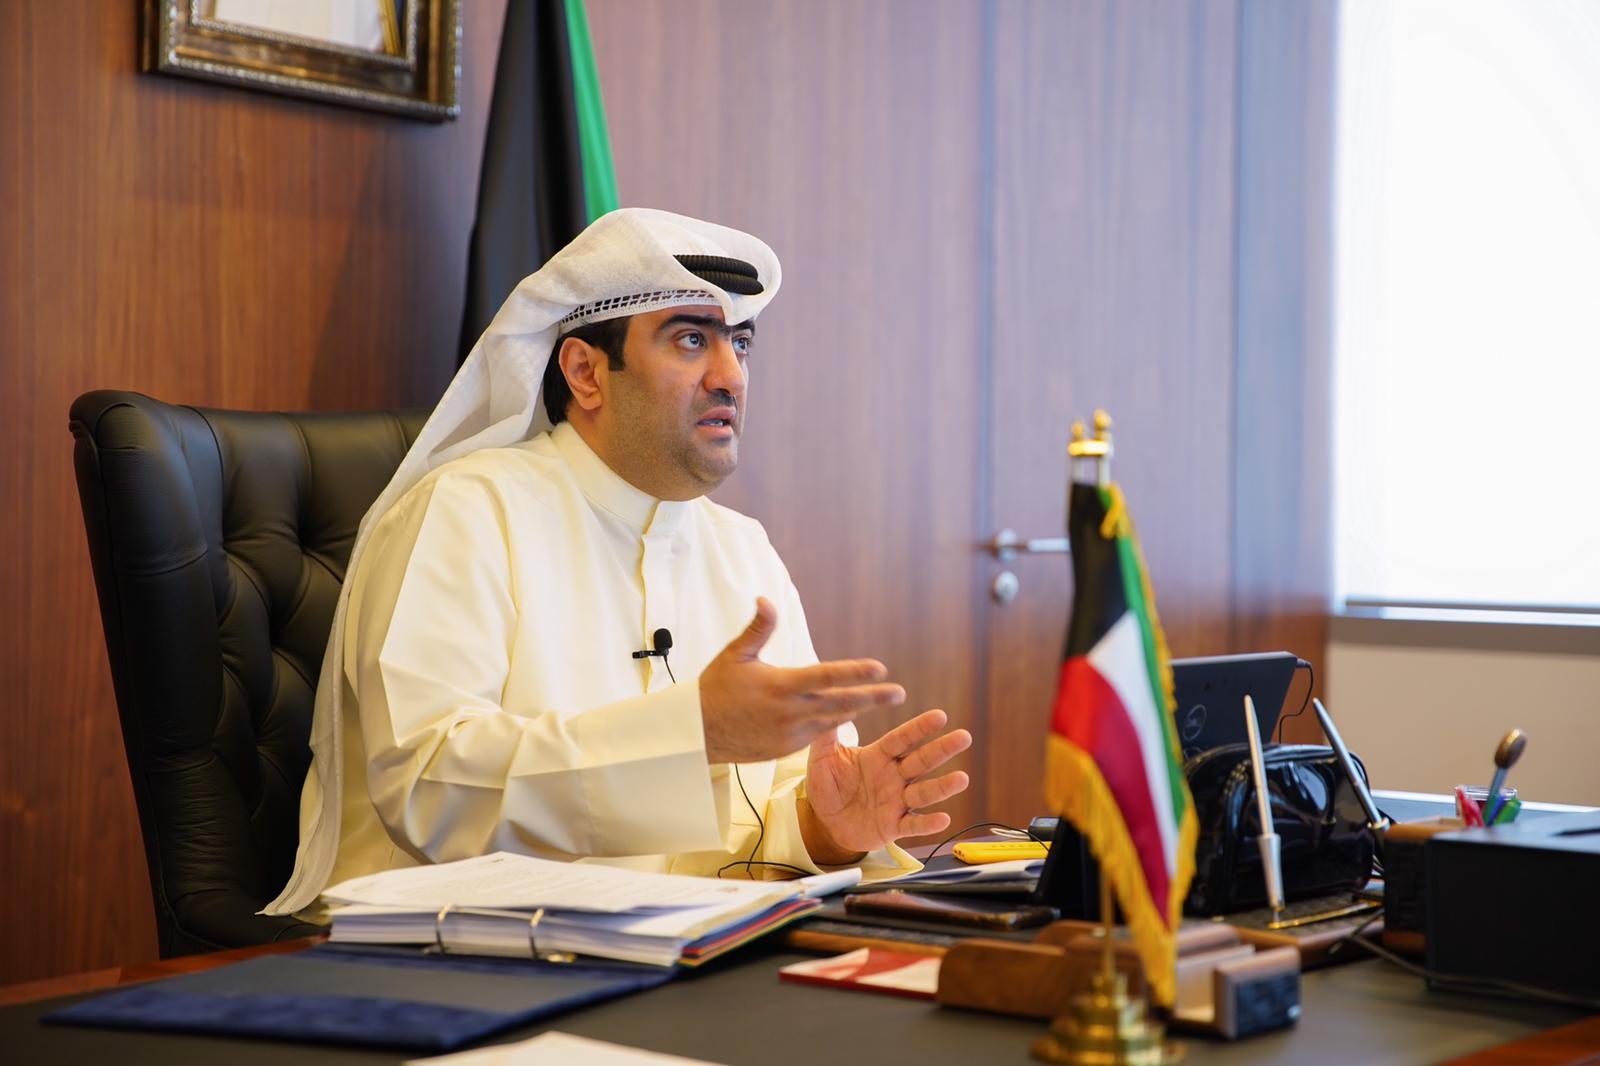 وزير التجارة خالد الروضان يشارك في الاجتماع الاستثنائي عبر تقنية الاتصال المرئي